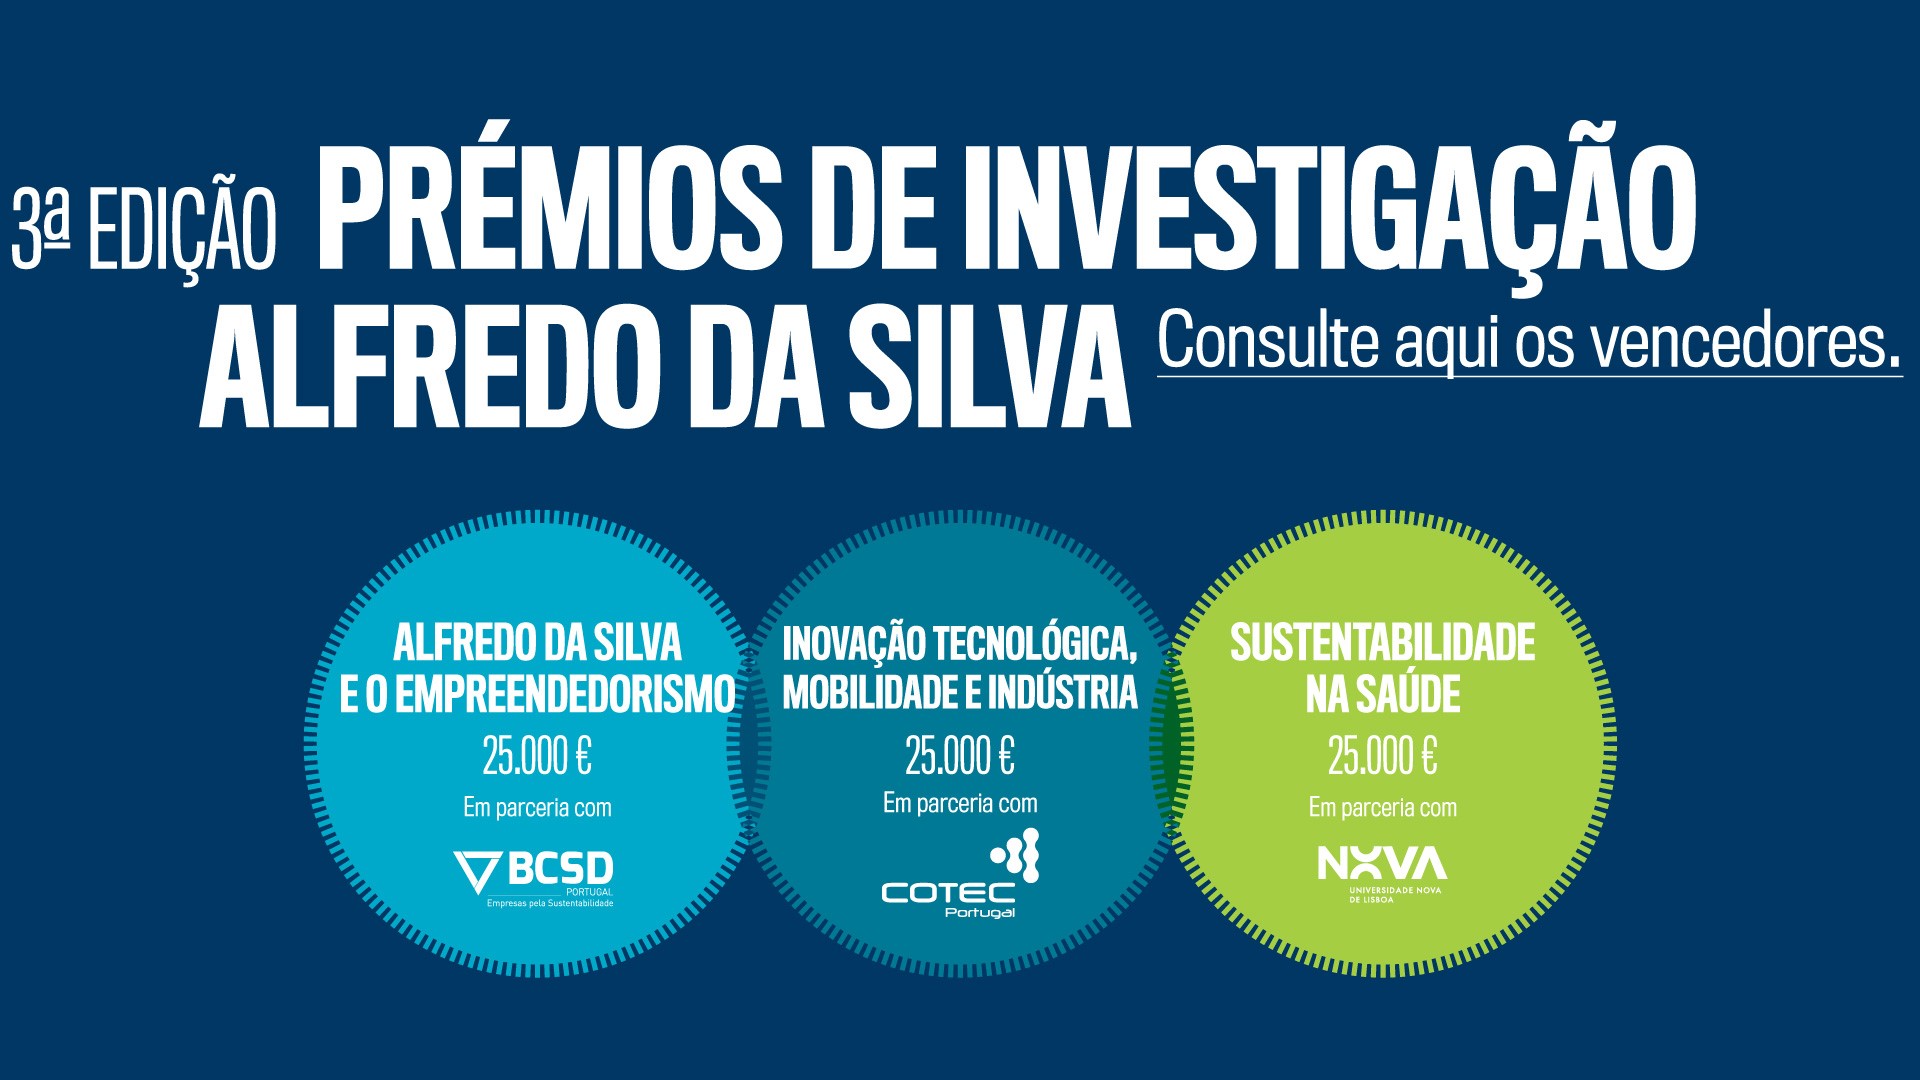 Prémios de Investigação Alfredo da Silva